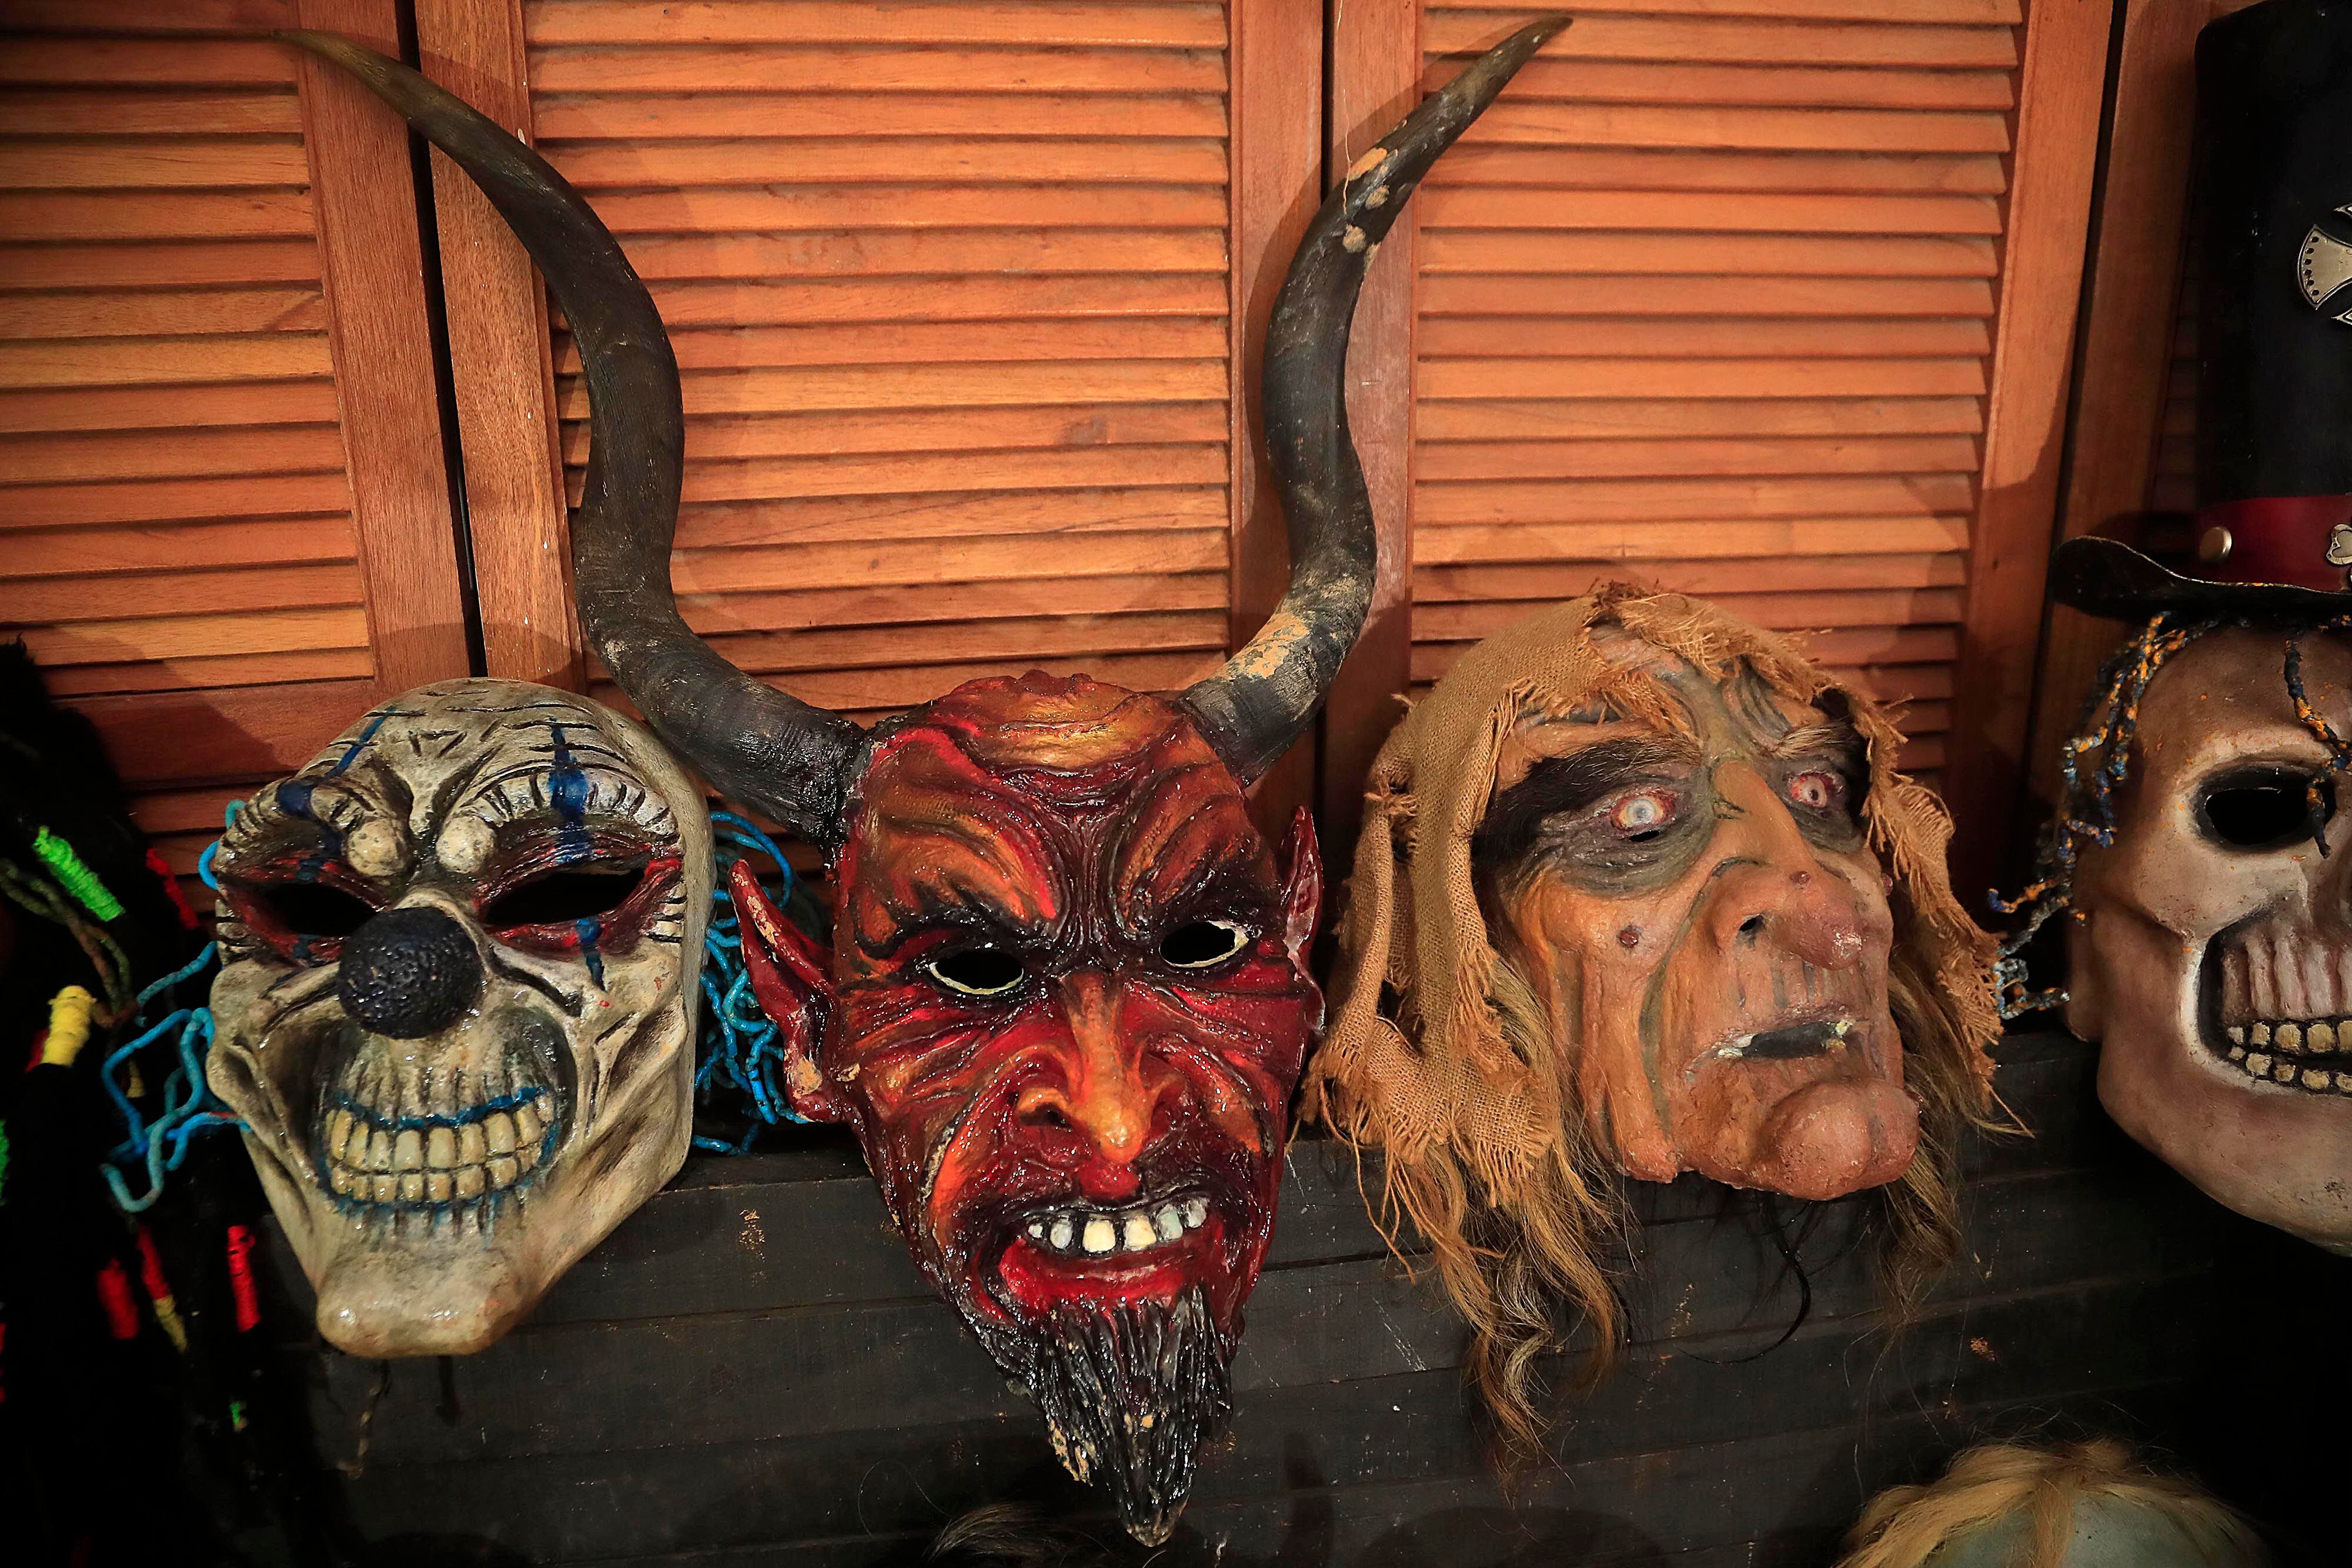 Los participantes portan la máscara sobre sus cabezas y decoran su cuerpo con vestimentas alusivas al personaje. El propósito es salir a asustar, bailar o simplemente desfilar.